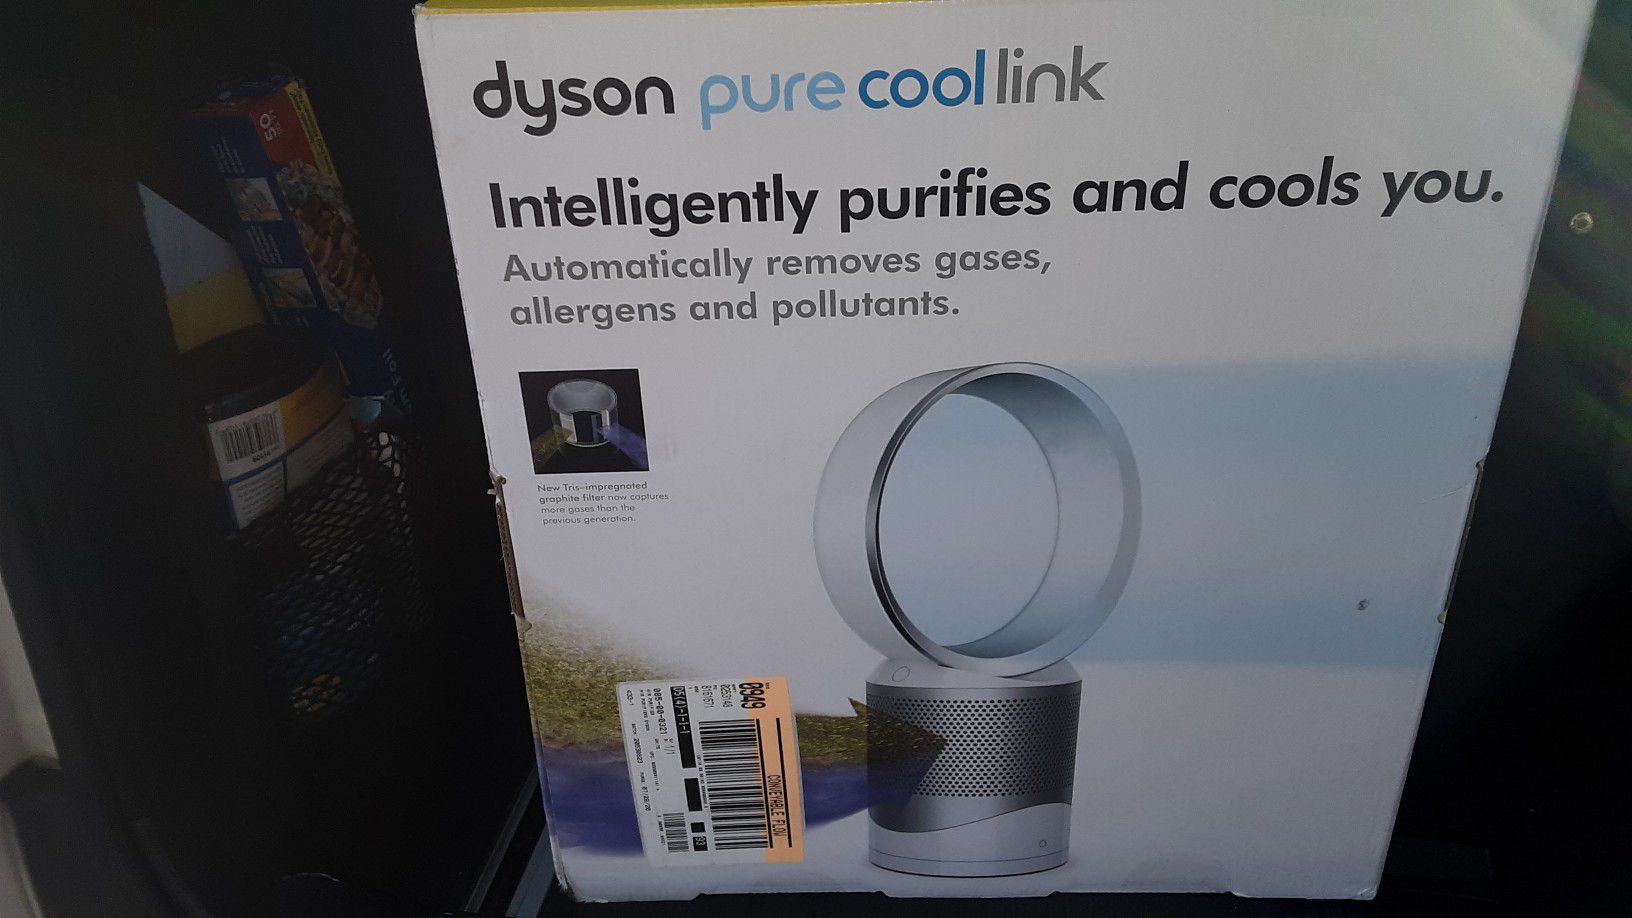 Dyson air purifier